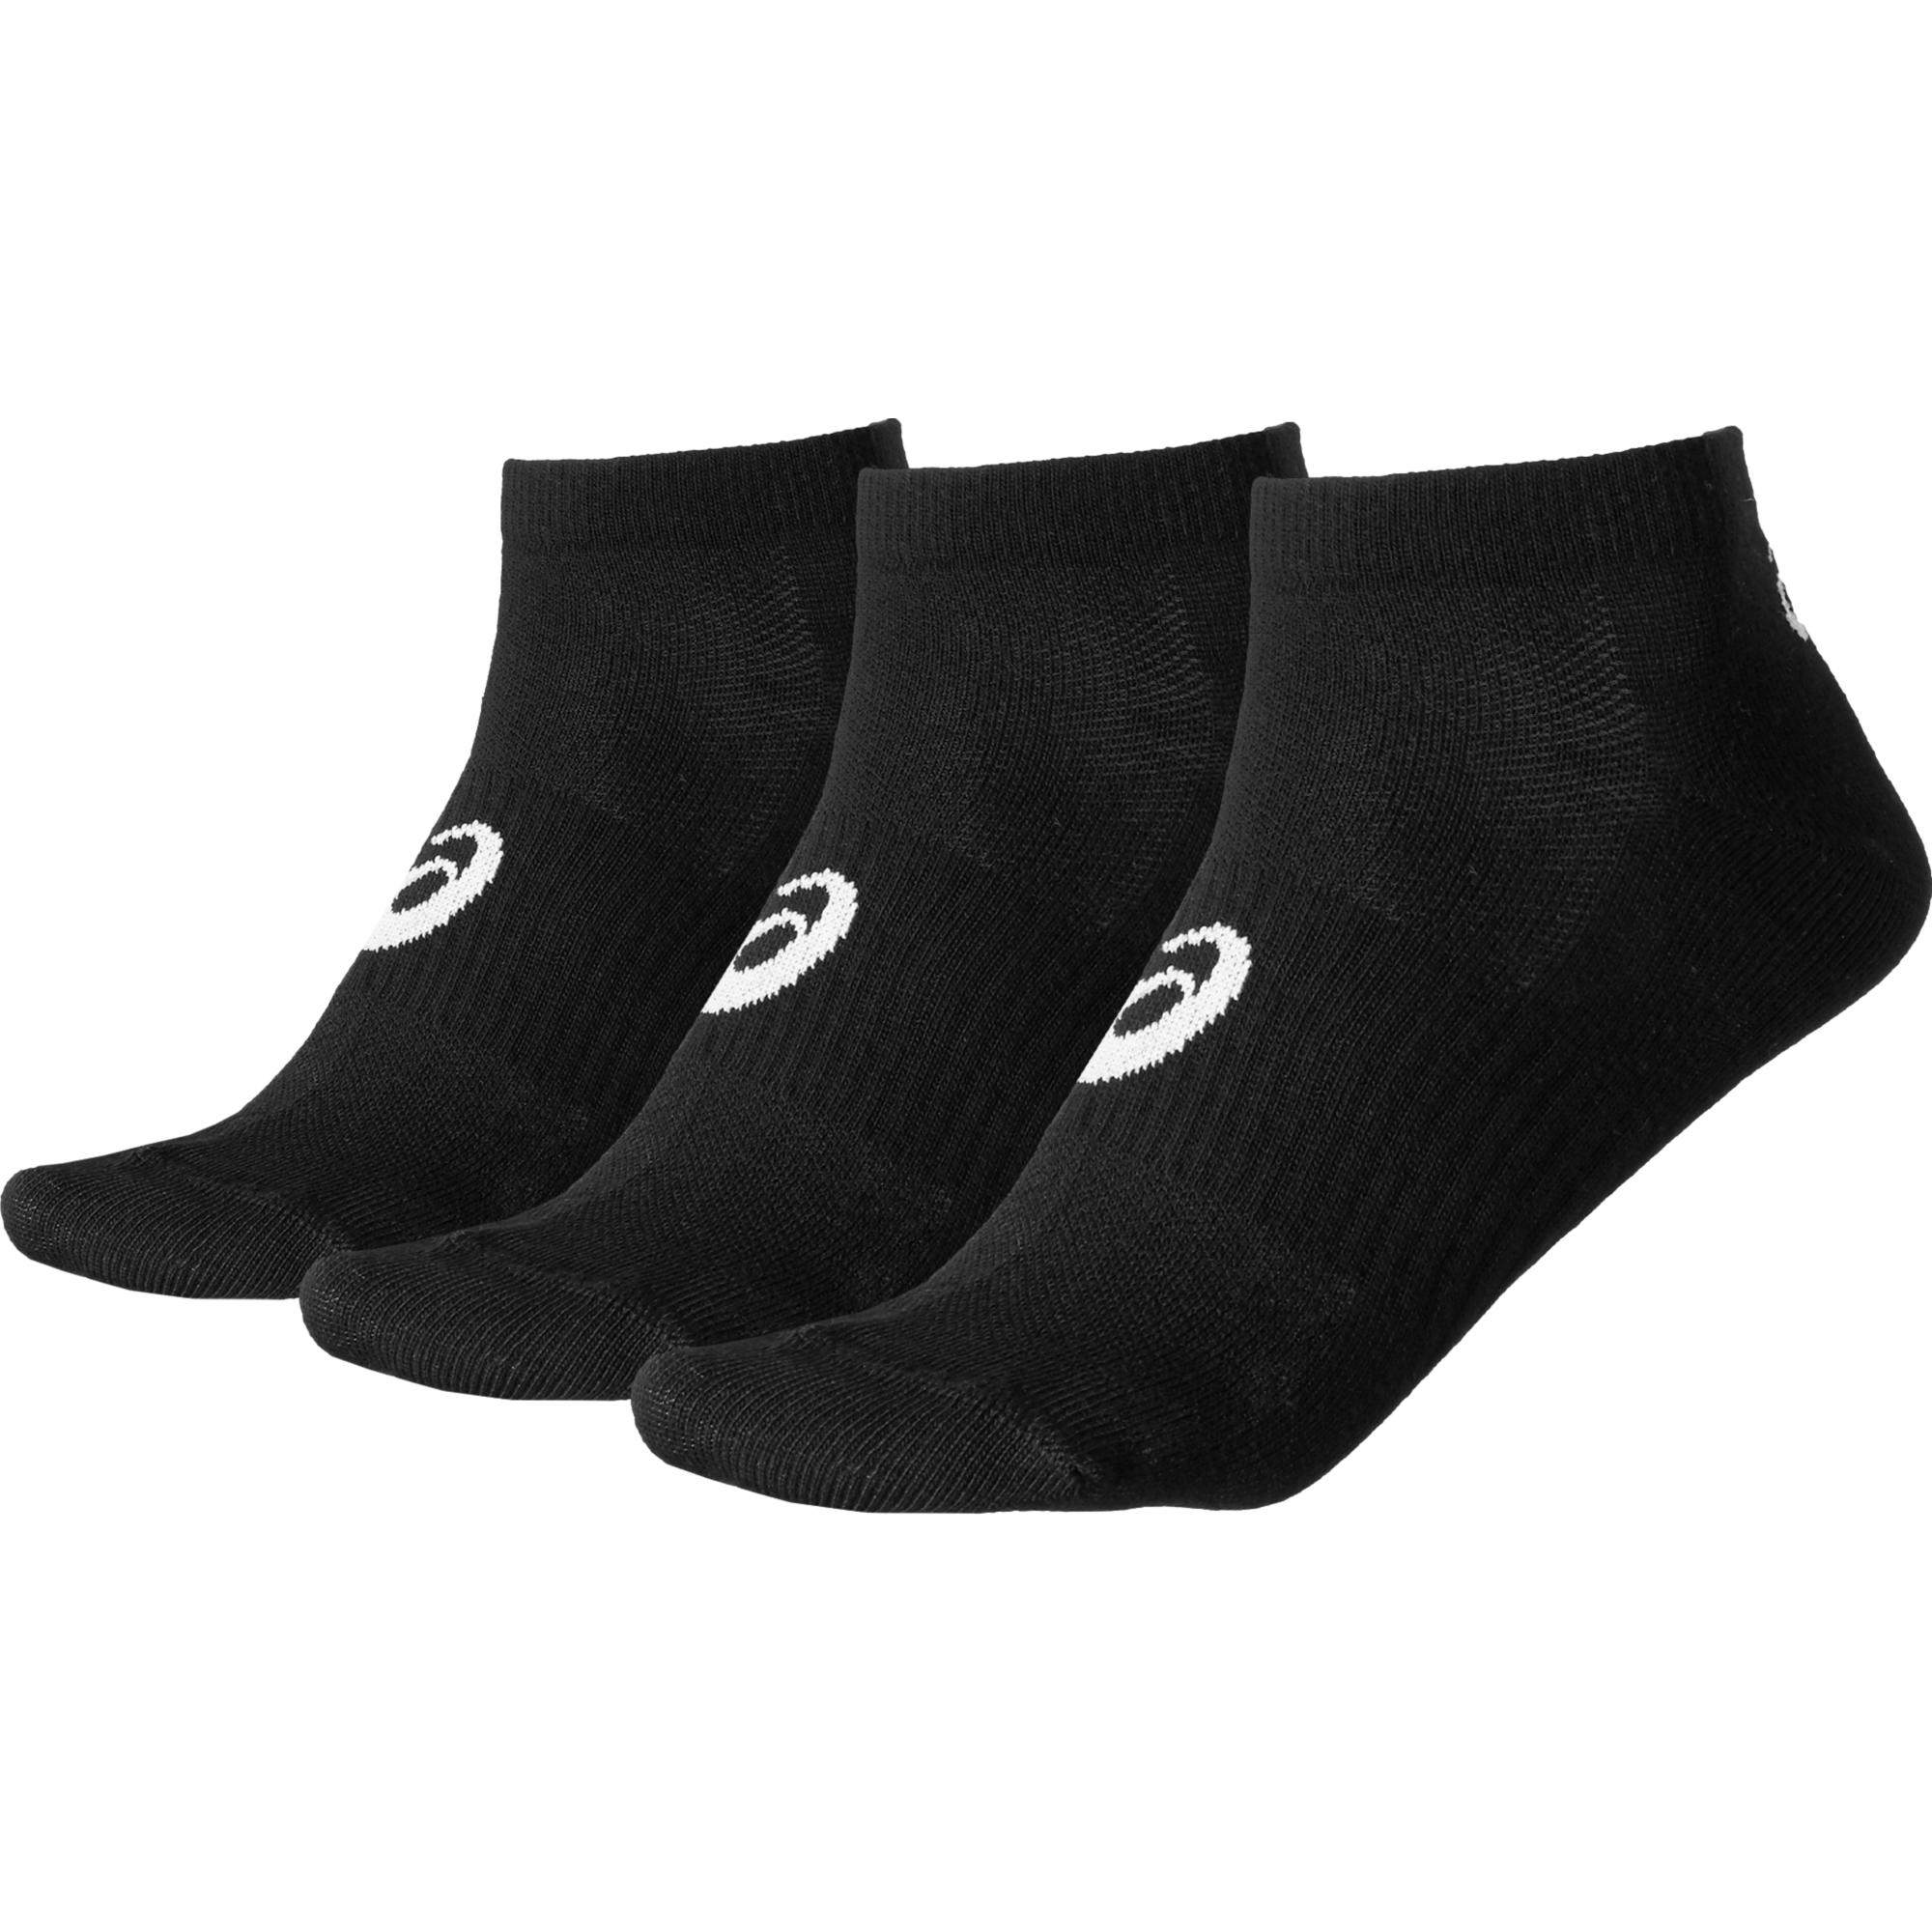 Asics Ped Socks (3 Pairs) - Black - Tennisnuts.com